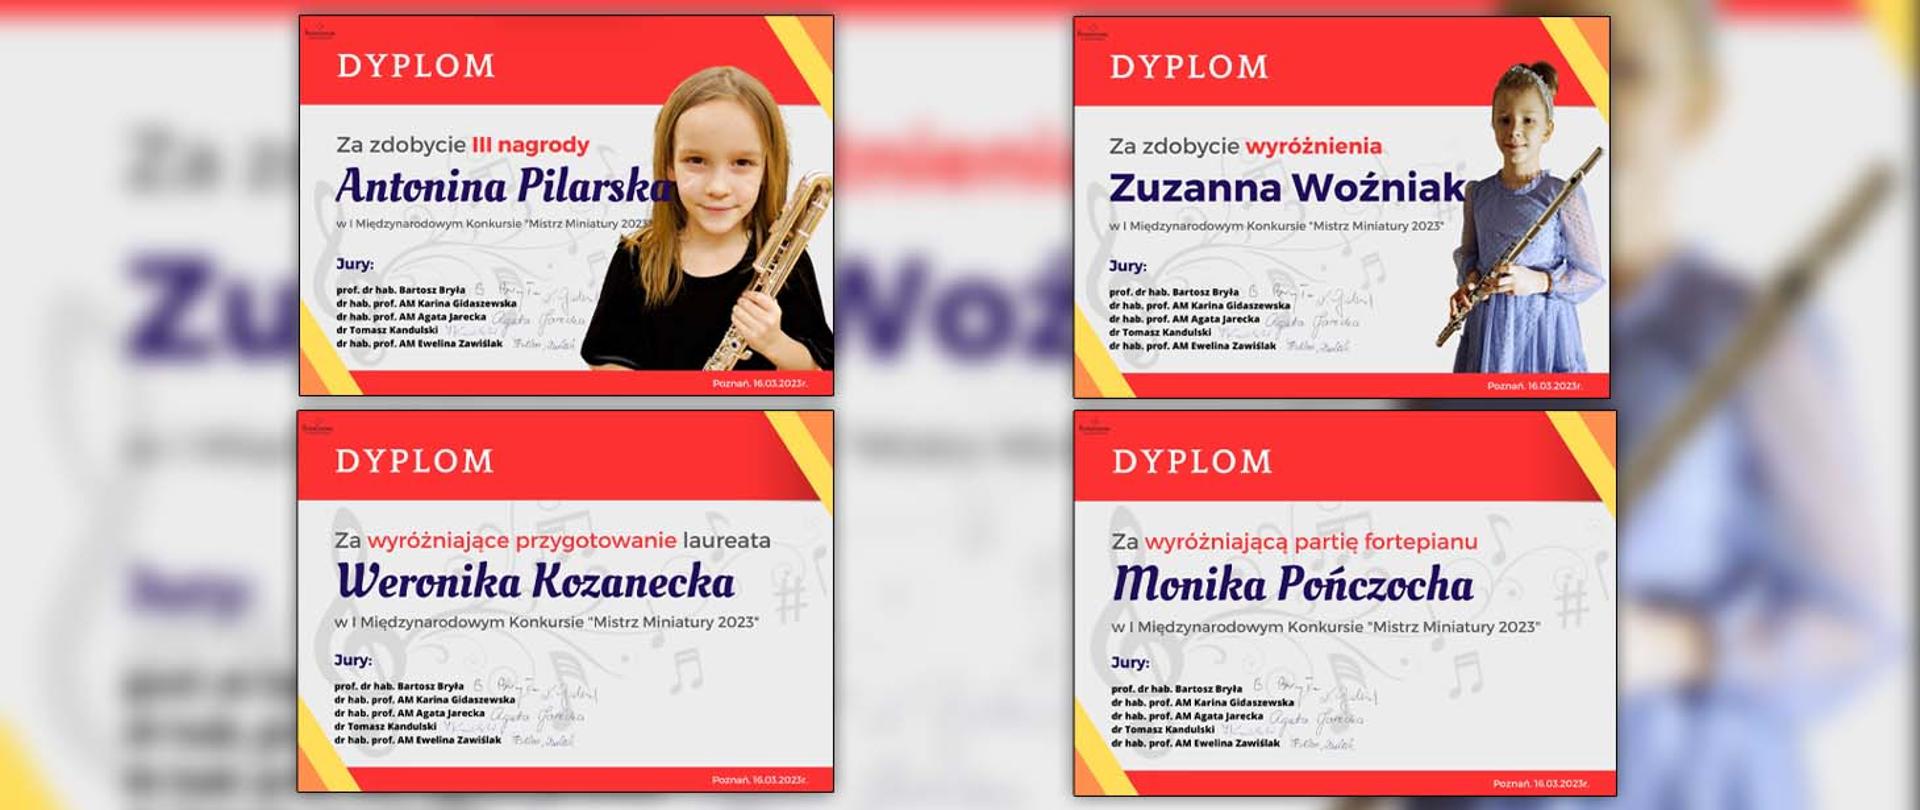 Collage 4 dyplomów - Antoniny Pilarskiej za zdobycie 3 nagrody, Zuzanny Woźniak za zdobycie wyróżnienia i dwóch nauczycielek za przygotowanie uczniów i akompaniament na fortepianie.